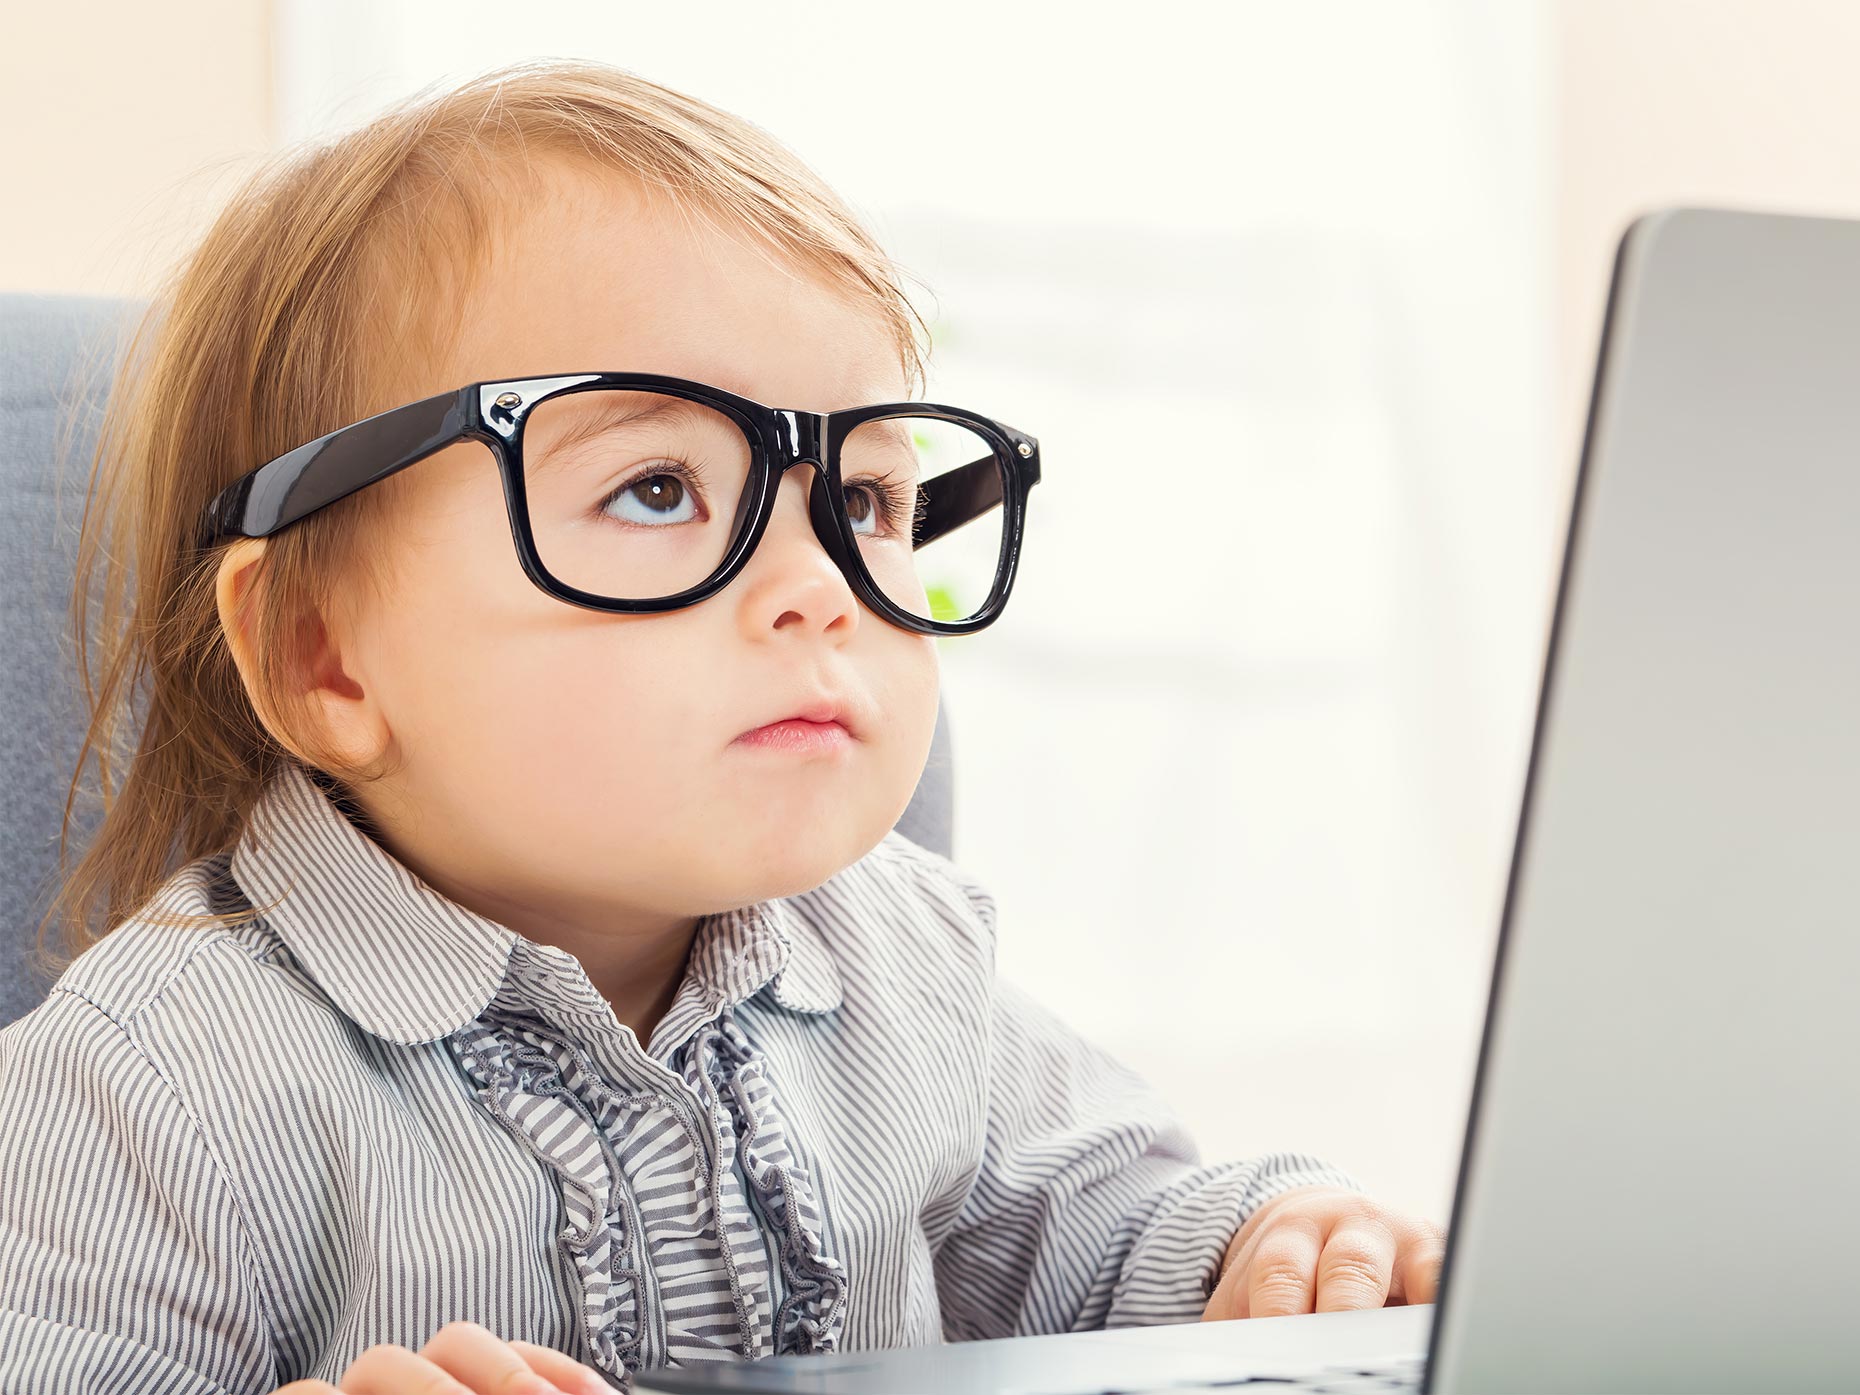 Bambini e computer: alcuni consigli per i genitori - Amico Pediatra